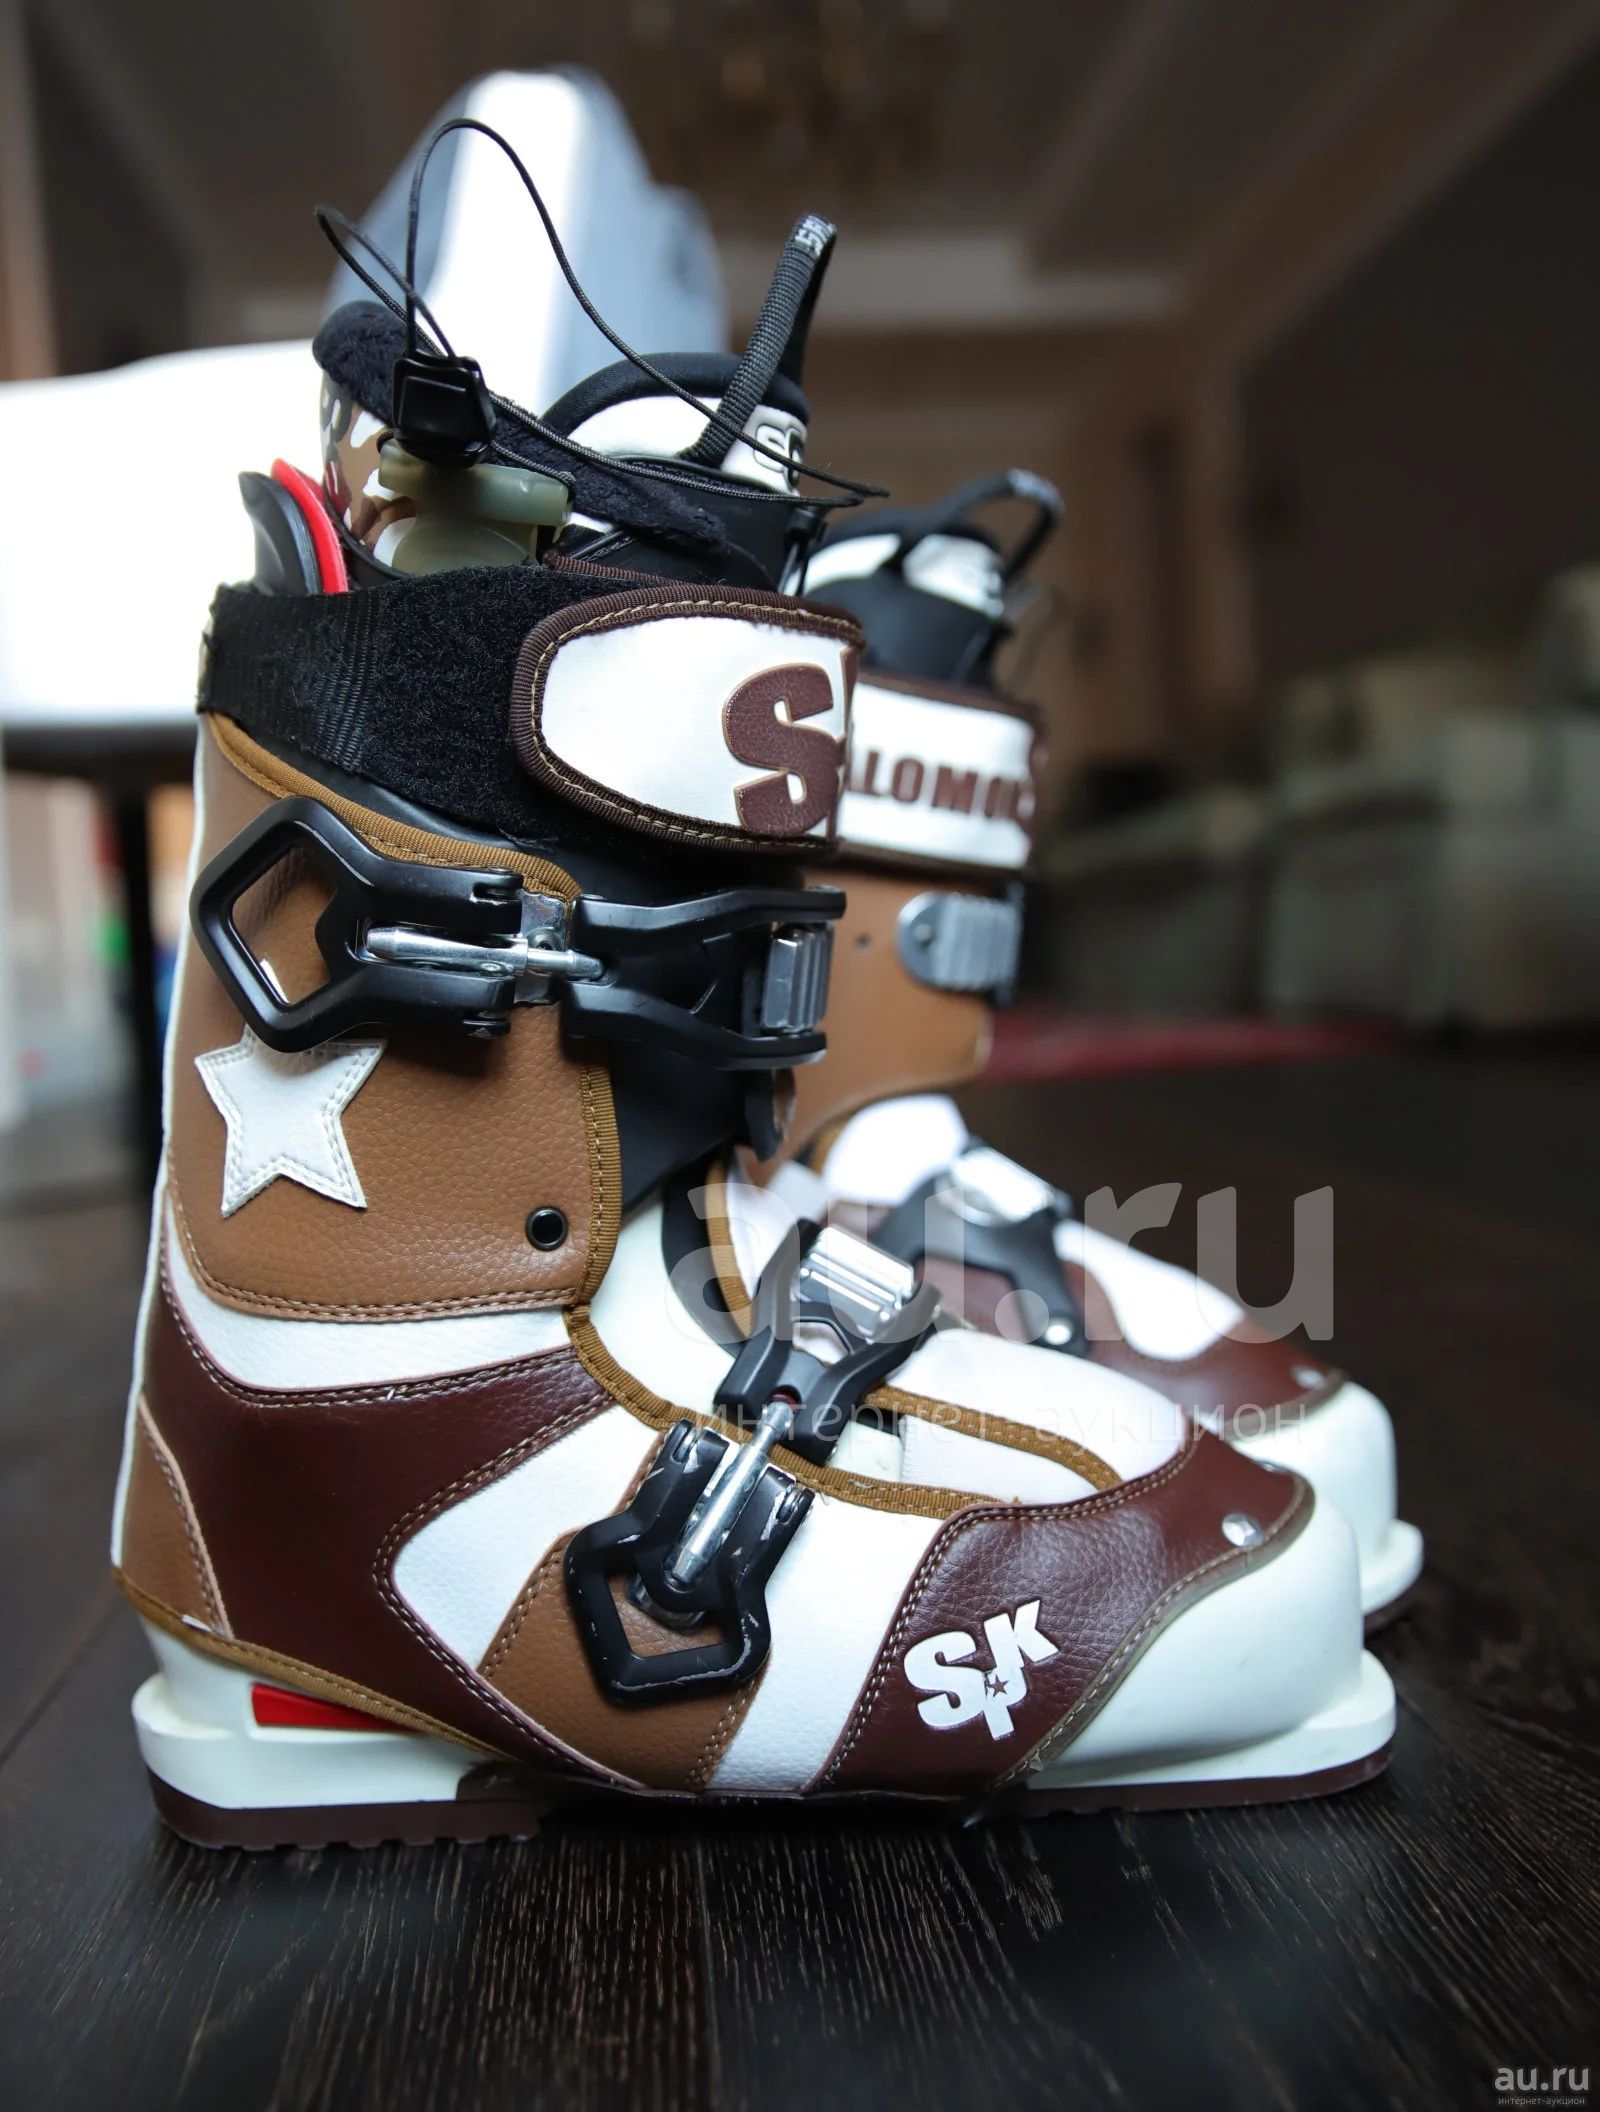 Ботинки горнолыжные Salomon SPK Pro Model Ski Boots — купить в Красноярске.  Состояние: Б/у. Ботинки на интернет-аукционе Au.ru